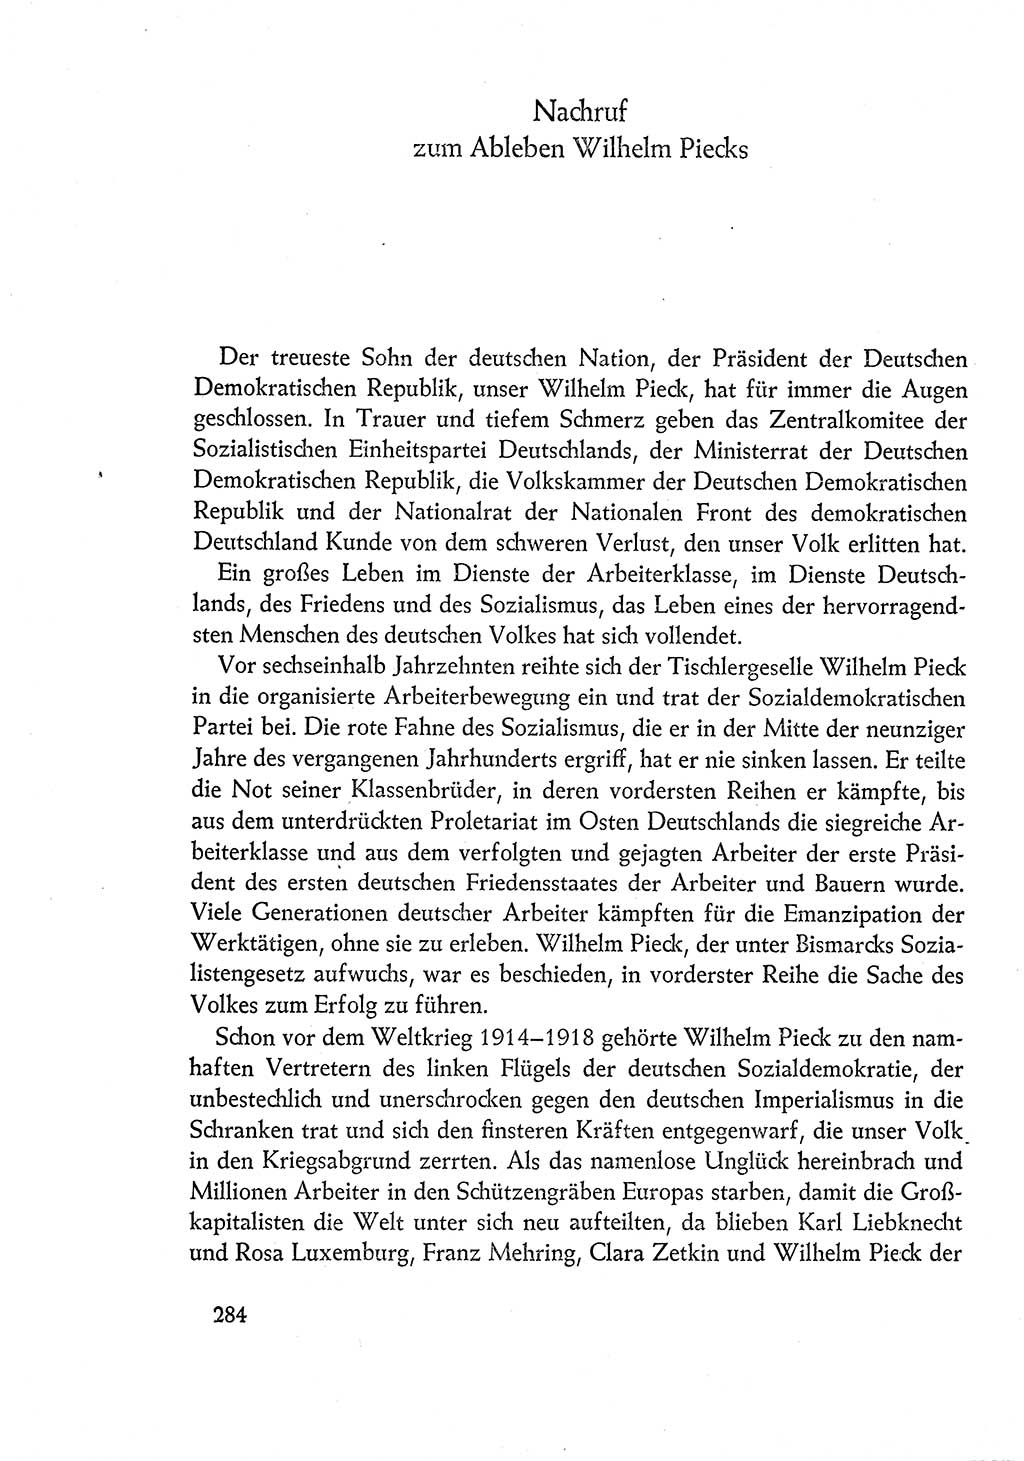 Dokumente der Sozialistischen Einheitspartei Deutschlands (SED) [Deutsche Demokratische Republik (DDR)] 1960-1961, Seite 284 (Dok. SED DDR 1960-1961, S. 284)